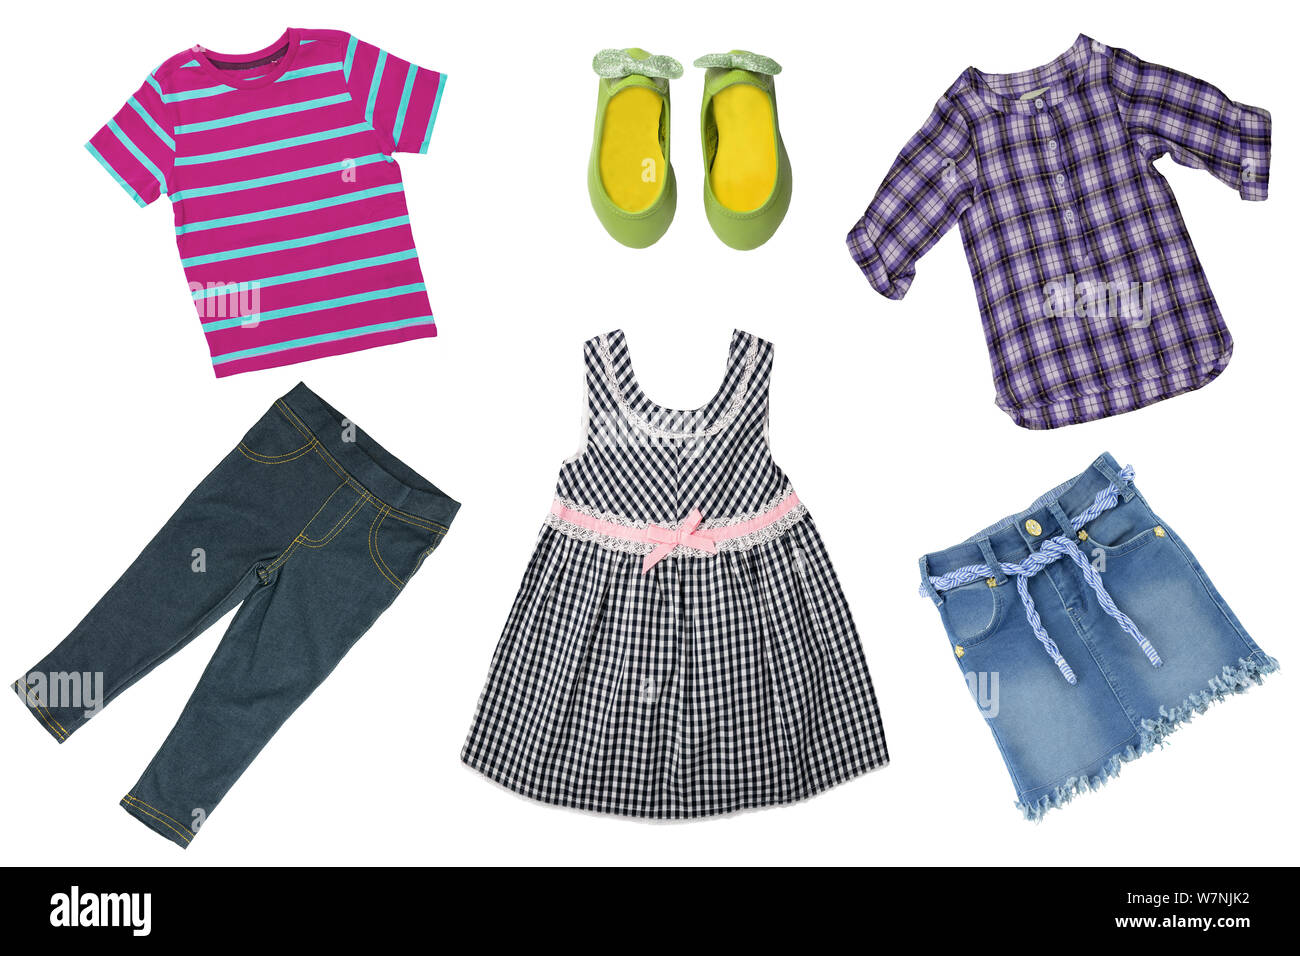 Sommer Mode. Collage von Baby Kind Mädchen Kleidung auf einem weißen Hintergrund. T-Shirts, Röcke, Schuhe oder Turnschuhe und Jeans Rock. Stockfoto